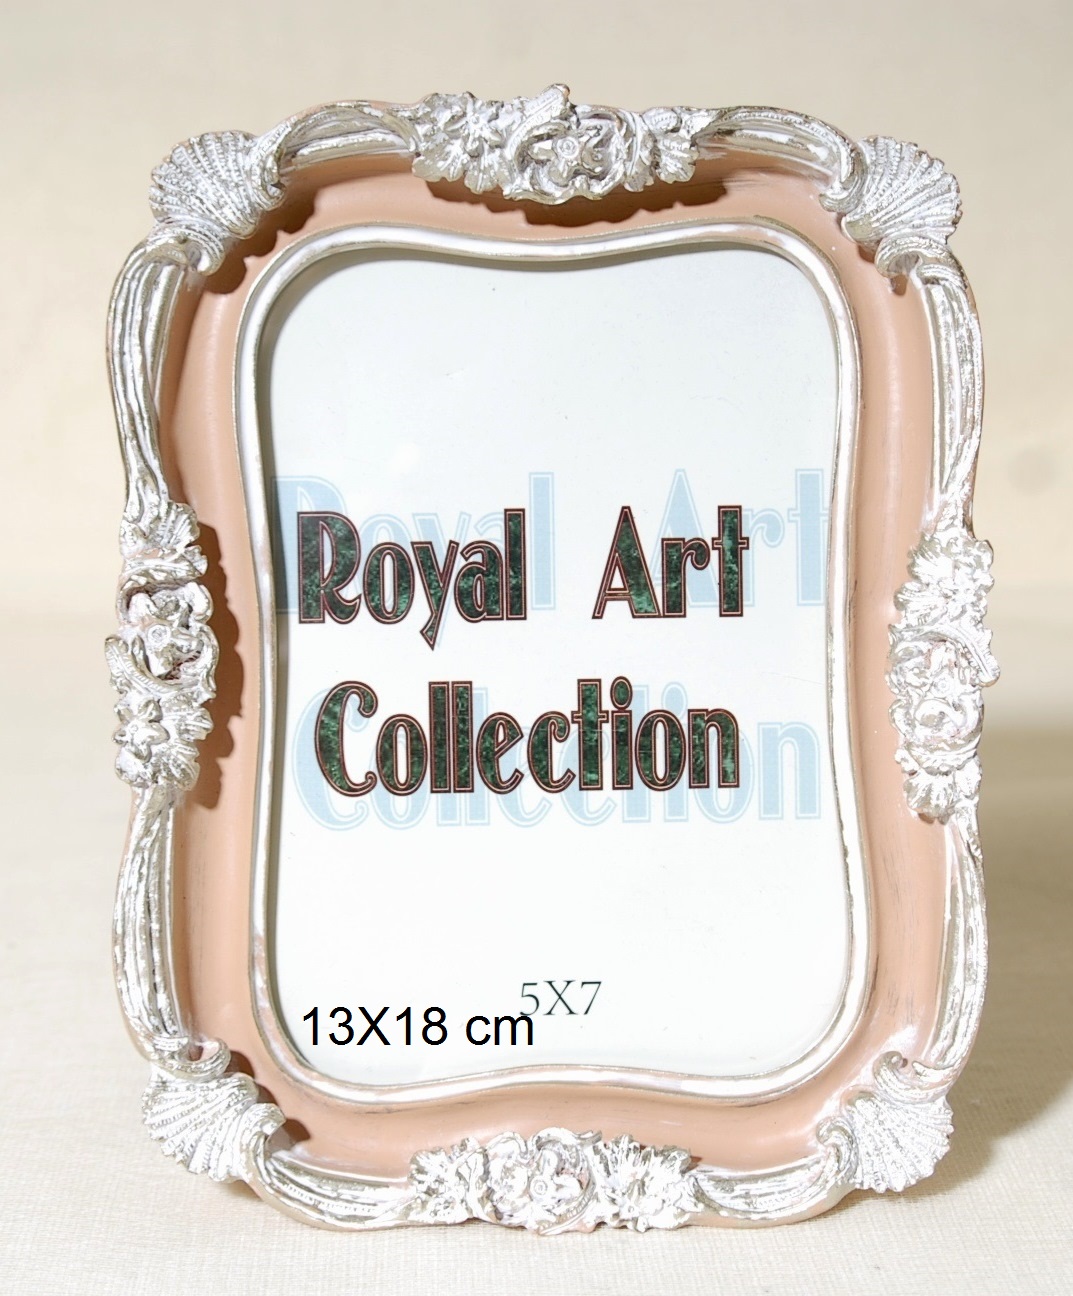 Κορνίζα Πολυεστερική Λευκή-Ροζ Royal Art 13x18εκ. YUA3/809/57BR (Χρώμα: Λευκό, Υλικό: Πολυεστερικό) - Royal Art Collection - YUA3/809/57BR